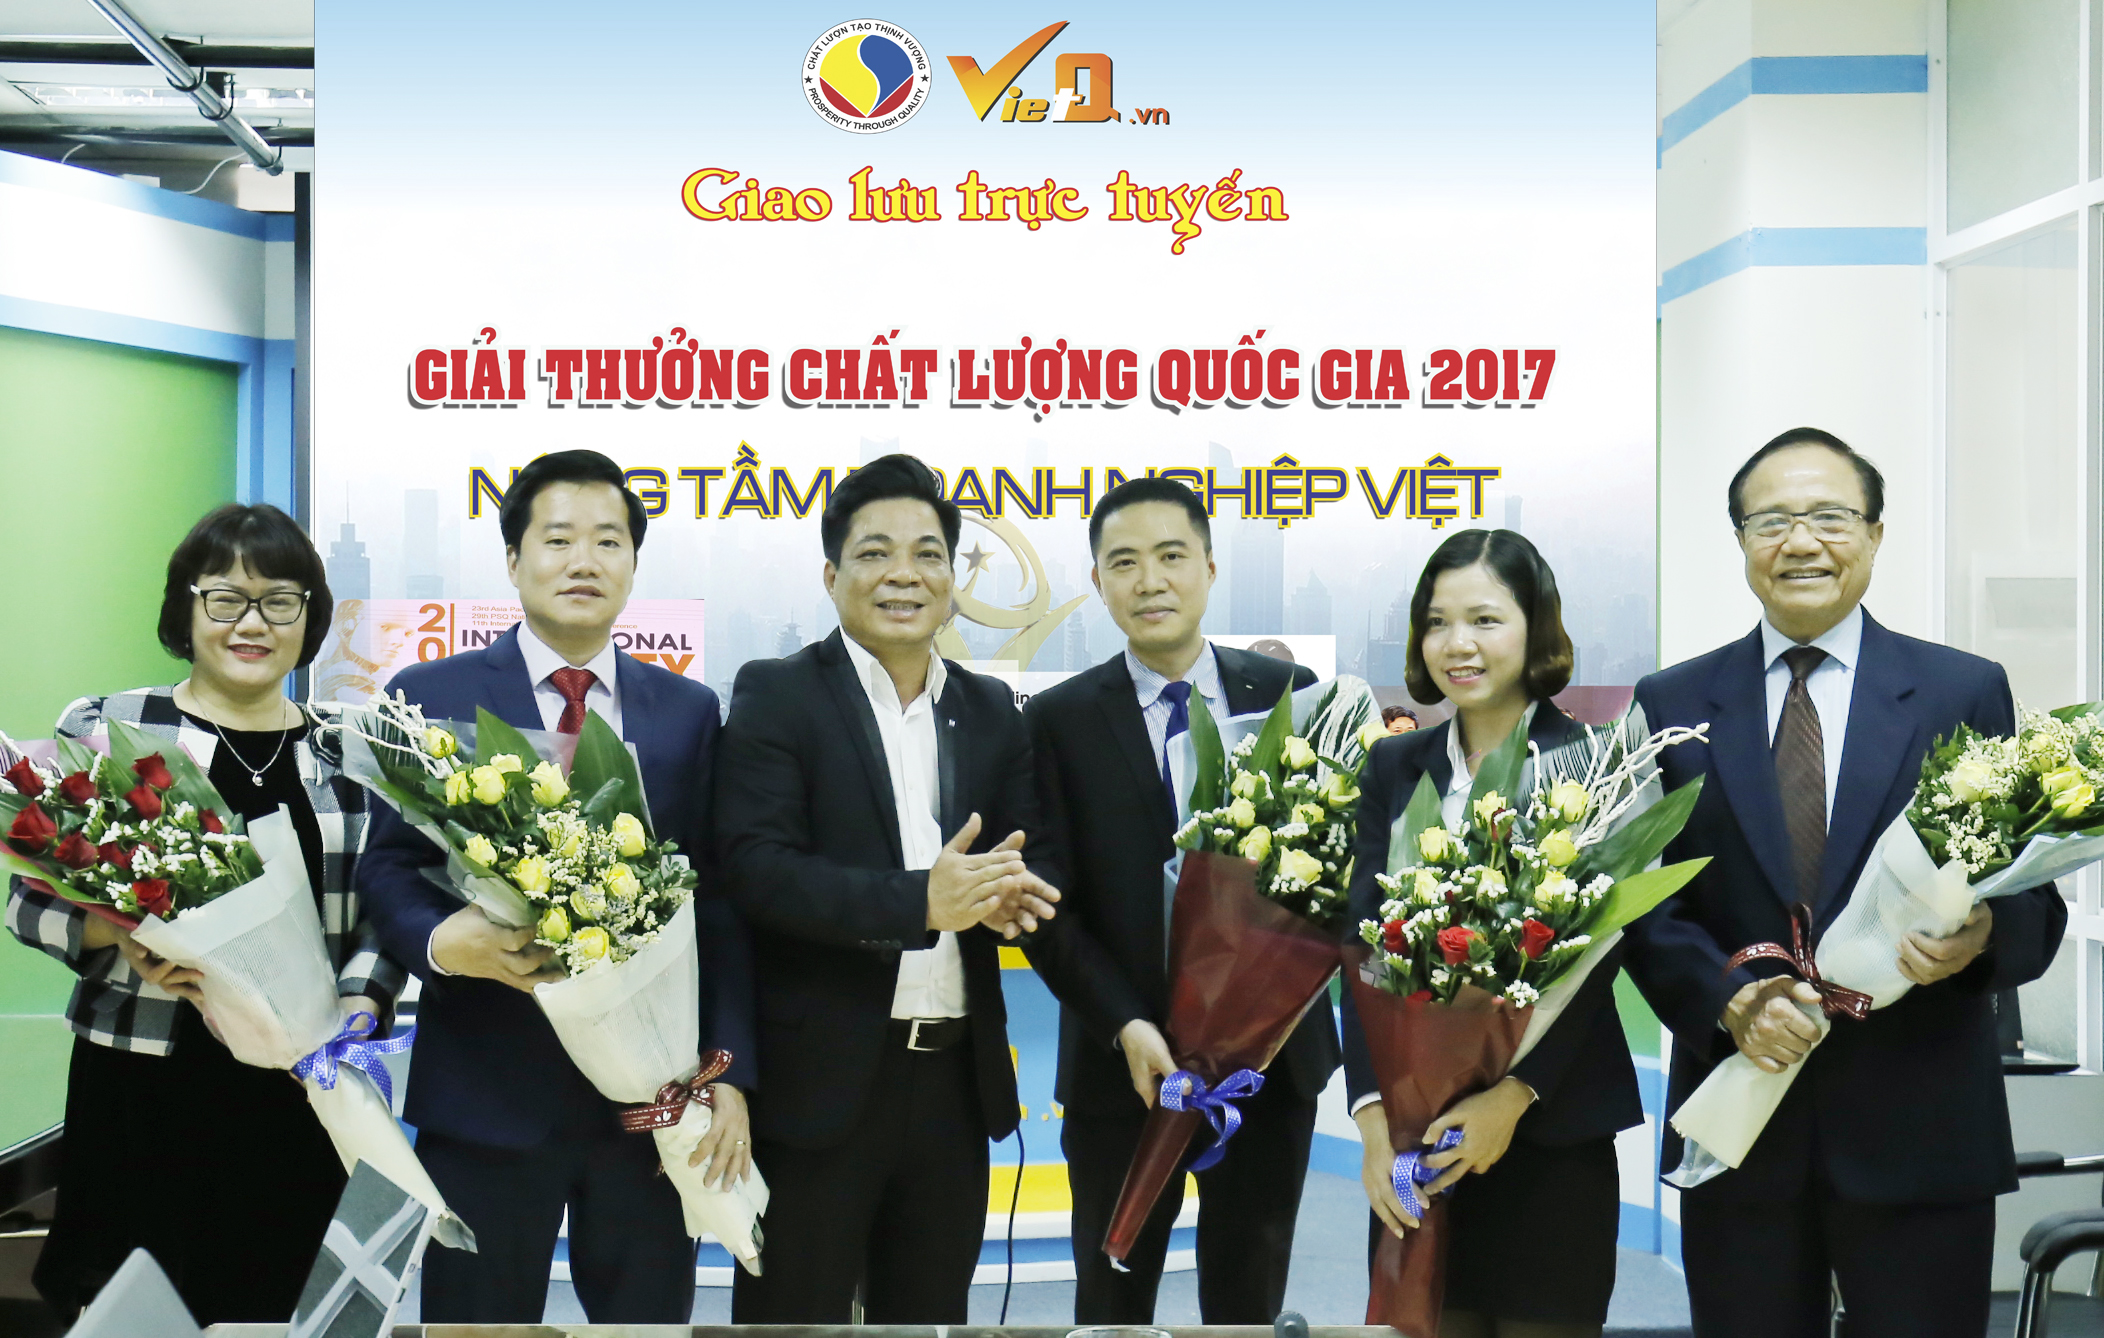 Tổng Biên tập Chất lượng Việt Nam online (VietQ.vn) Trần Văn Dư tặng hoa các khách mời tham gia chương trình giao lưu trực tuyến.